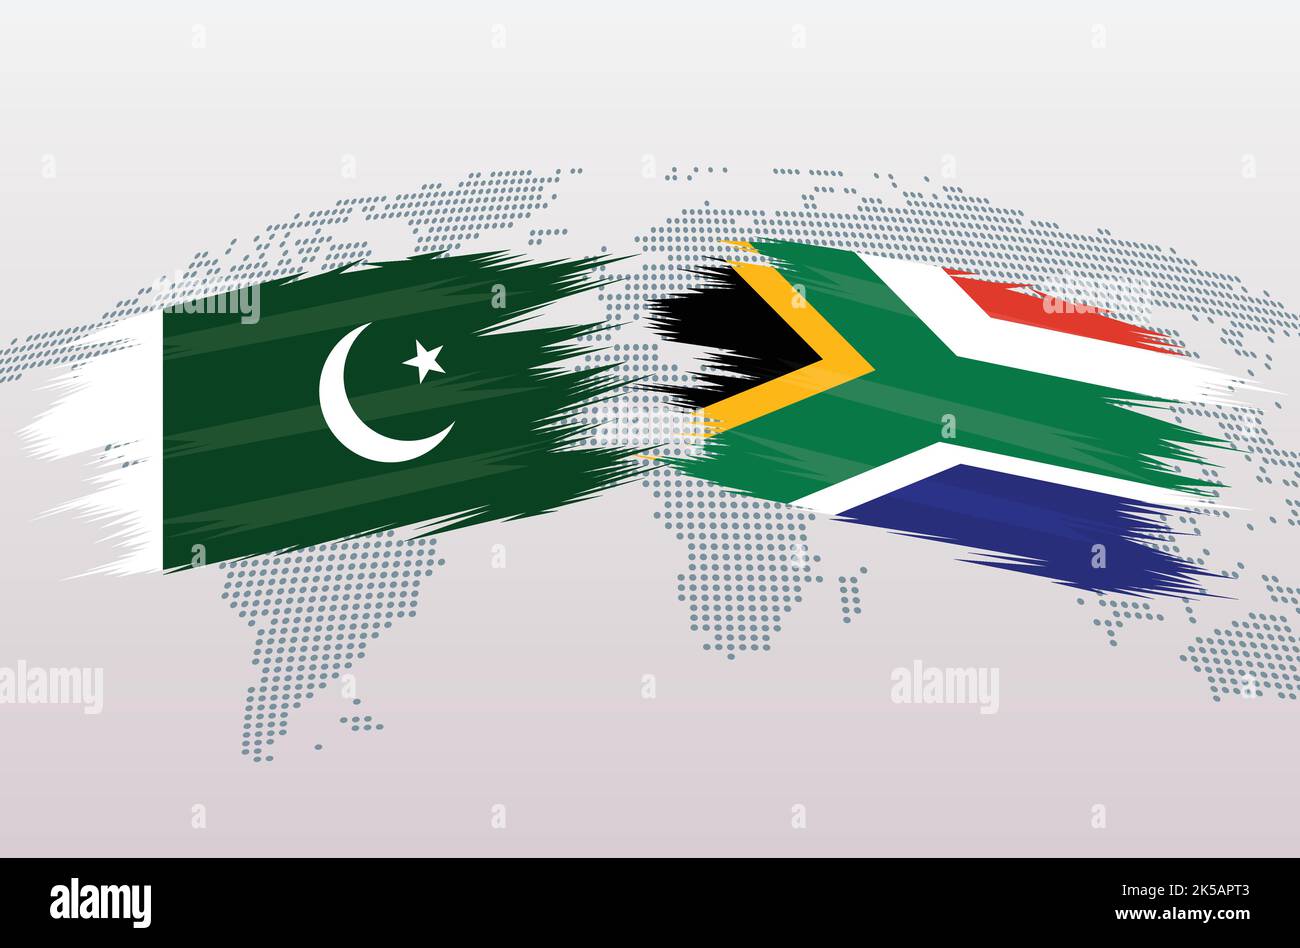 Bandiere Pakistan vs Sud Africa. Bandiera della Repubblica islamica del Pakistan e bandiera sudafricana, isolata su sfondo grigio della mappa del mondo. Illustrazione vettoriale. Illustrazione Vettoriale